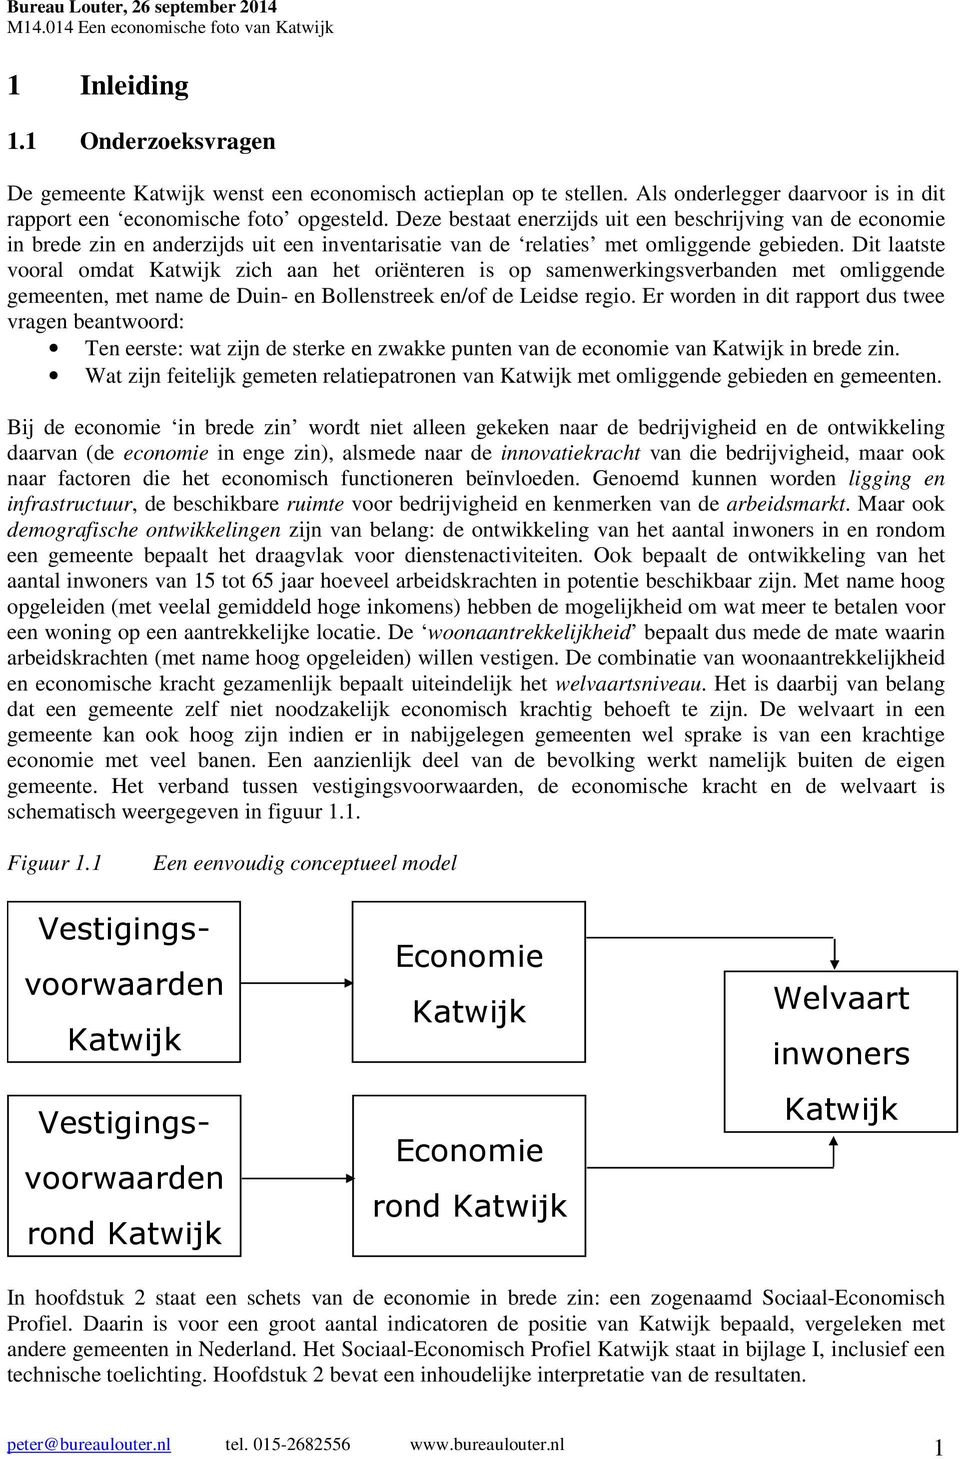 Dit laatste vooral omdat Katwijk zich aan het oriënteren is op samenwerkingsverbanden met omliggende gemeenten, met name de en/of de.